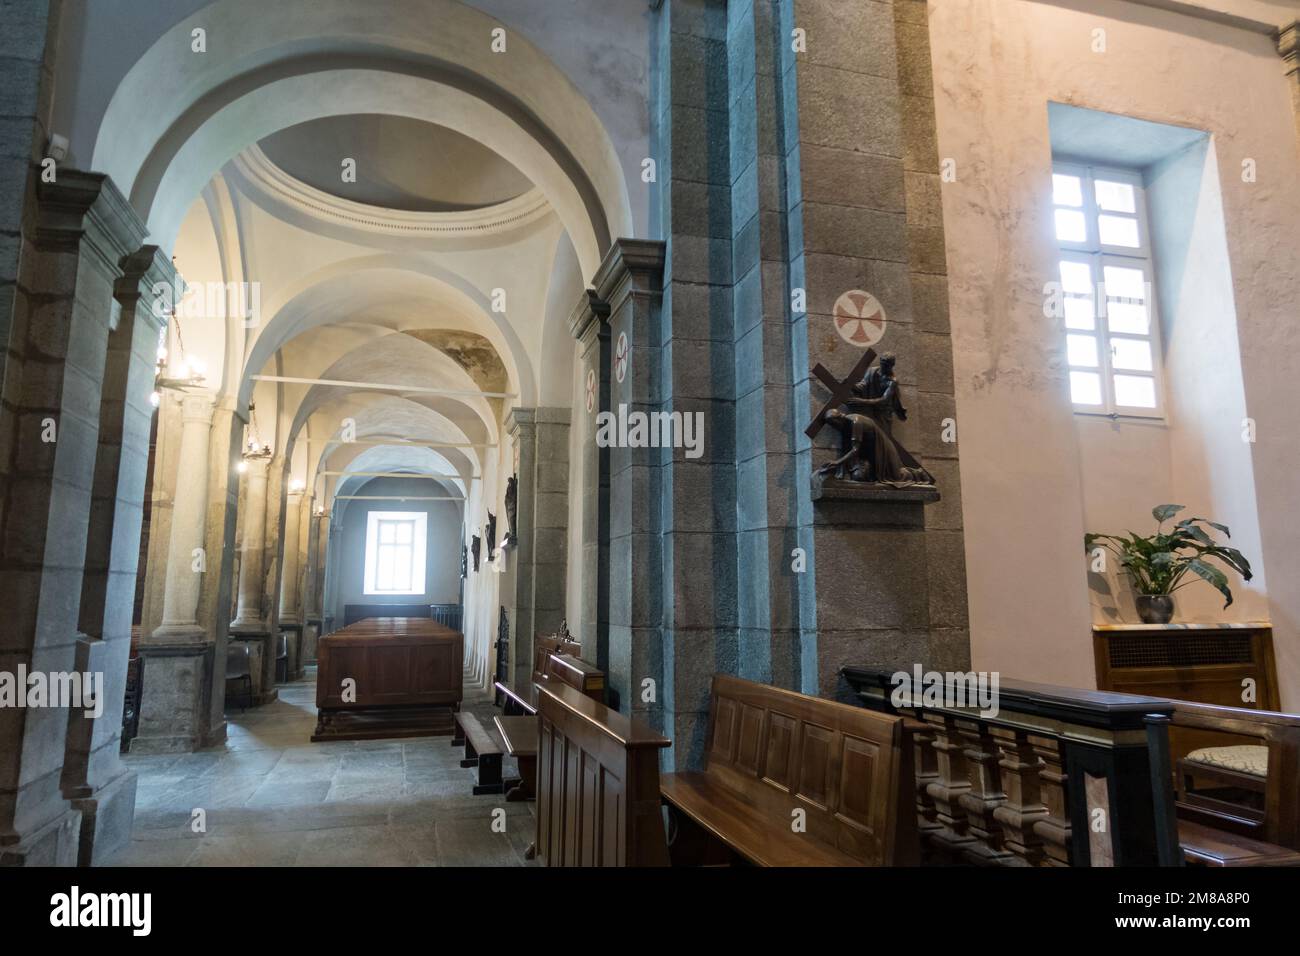 Vue sur l'intérieur de l'ancienne église d'Oropa, près de Biella, en Italie Banque D'Images